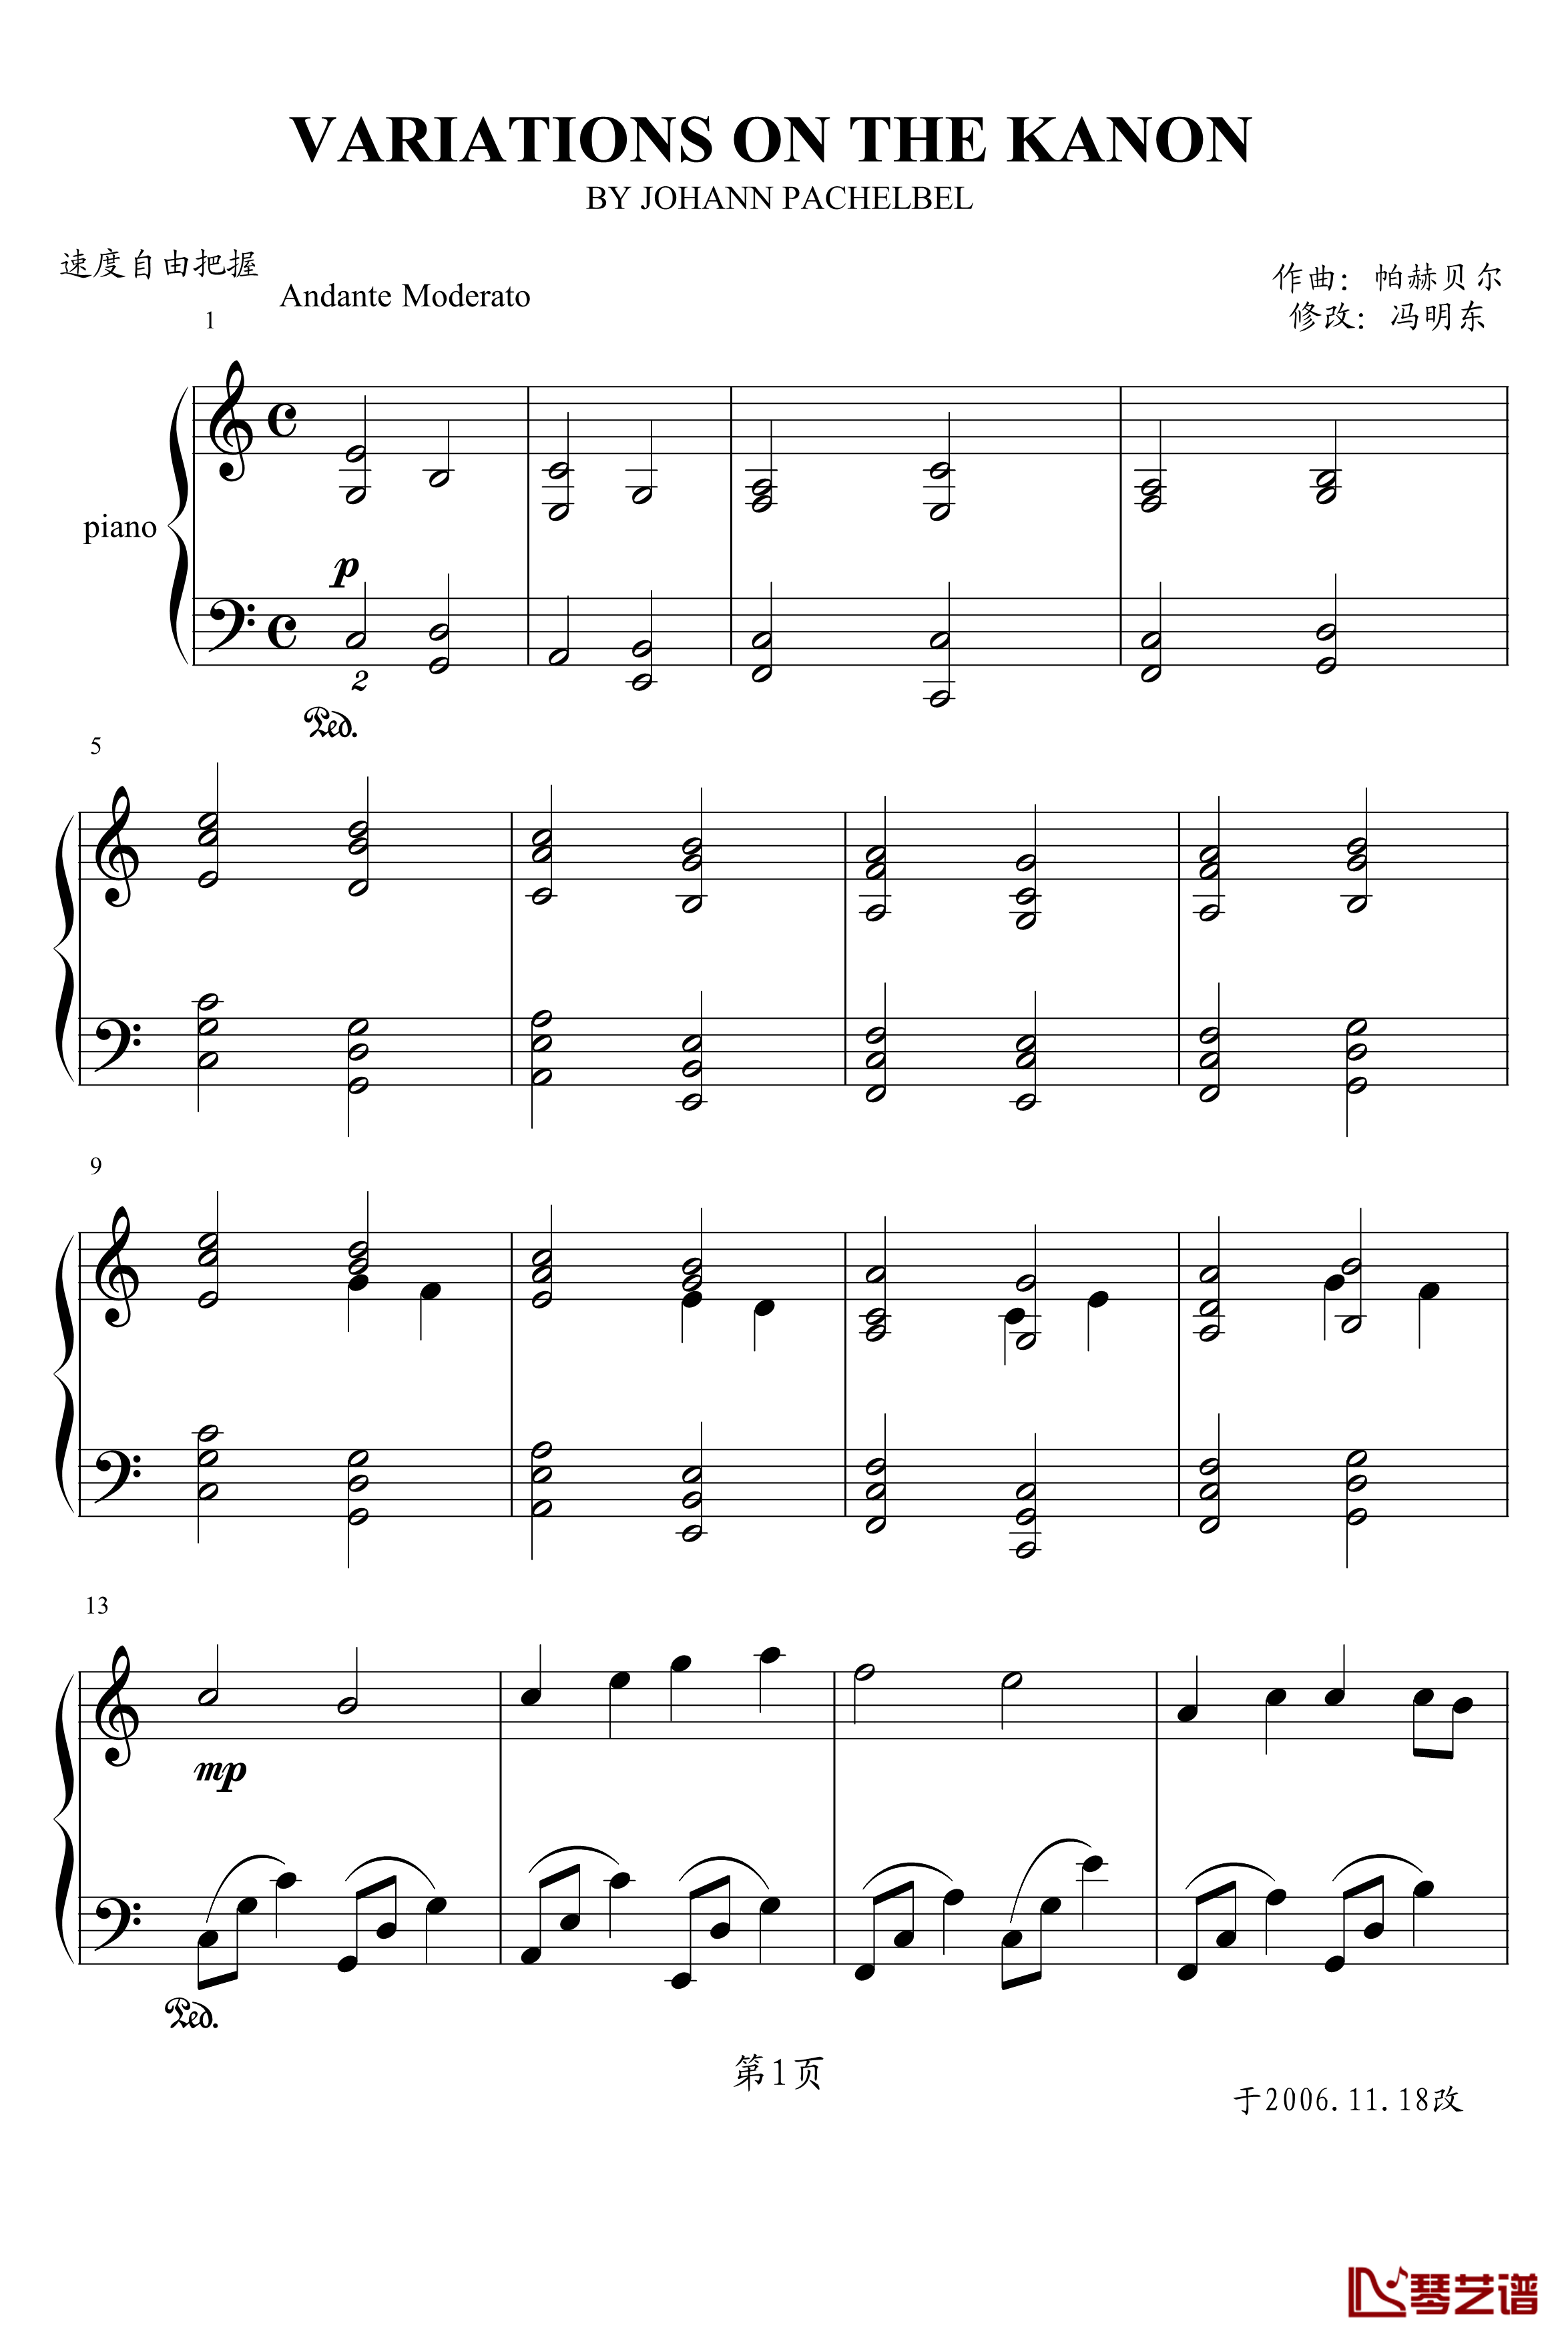 卡农钢琴谱-冯明东版-帕赫贝尔-Pachelbel1